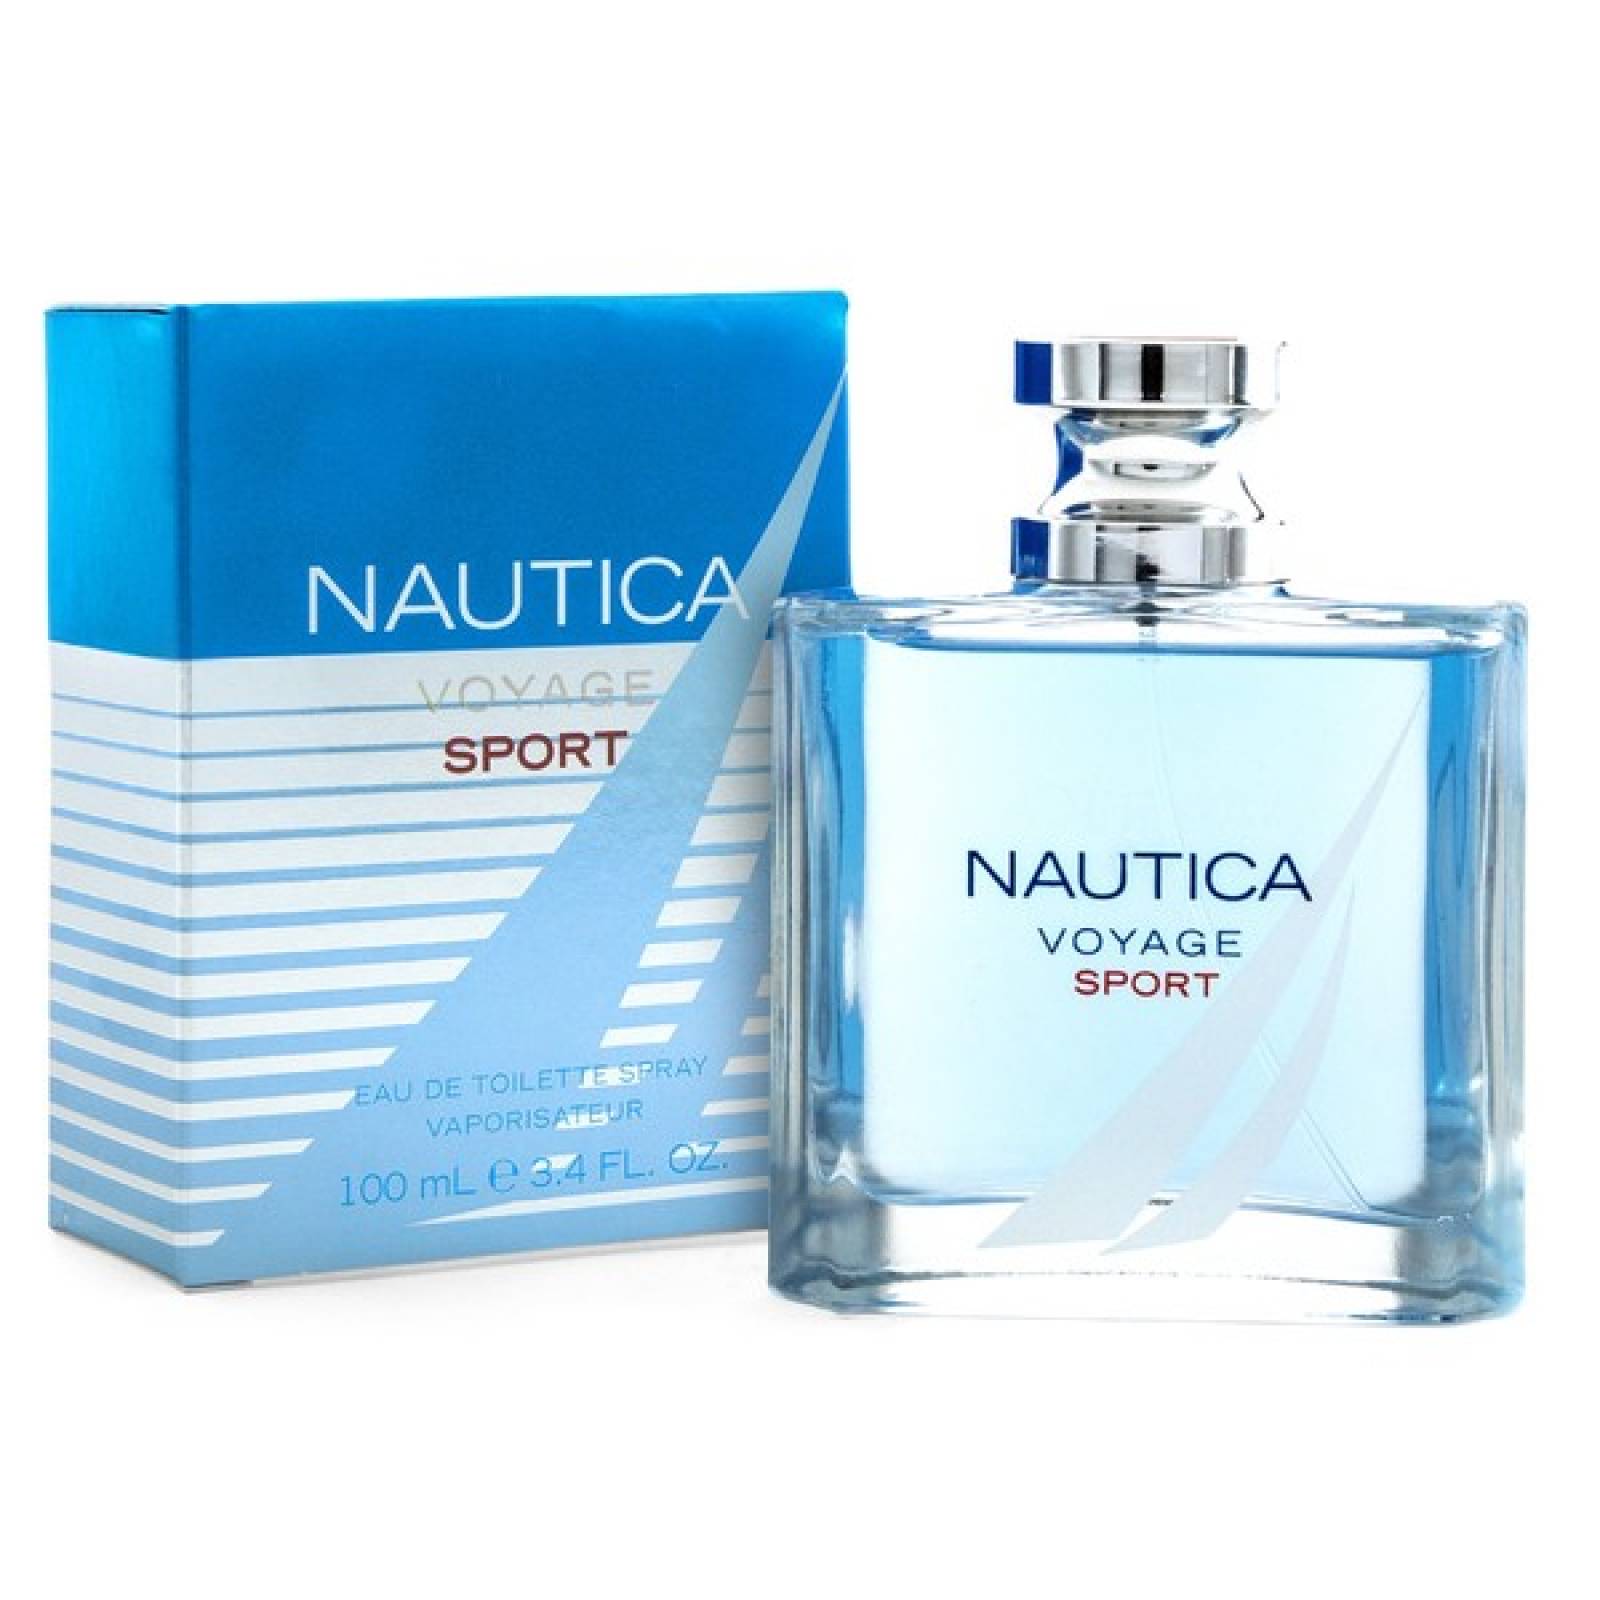 nautica voyage or voyage sport